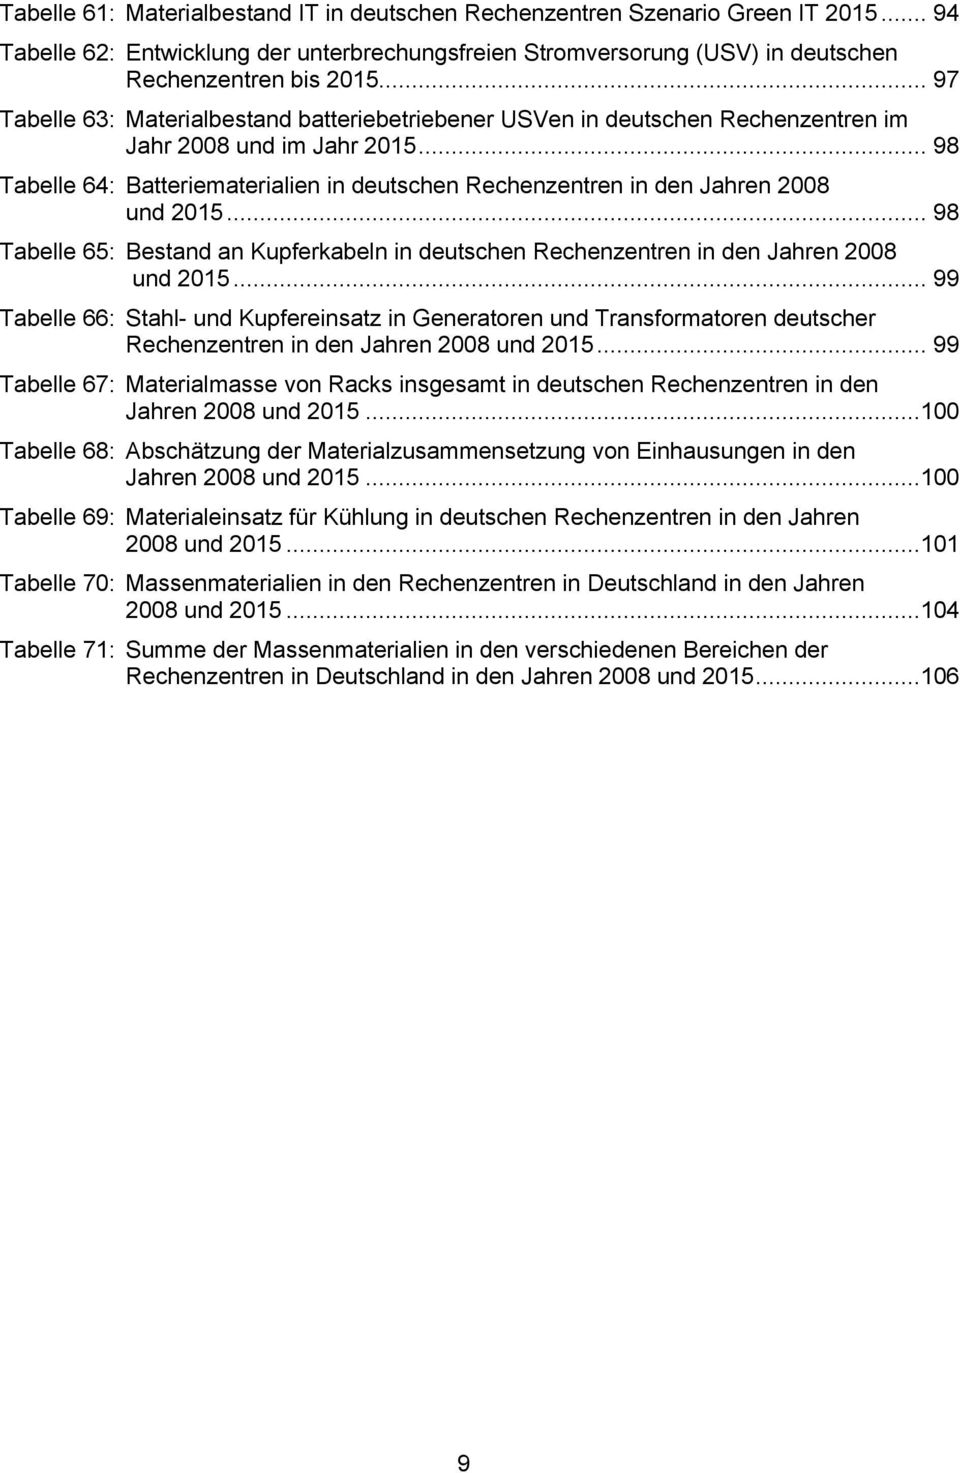 .. 98 Tabelle 64: Batteriematerialien in deutschen Rechenzentren in den Jahren 2008 und 2015... 98 Tabelle 65: Bestand an Kupferkabeln in deutschen Rechenzentren in den Jahren 2008 und 2015.